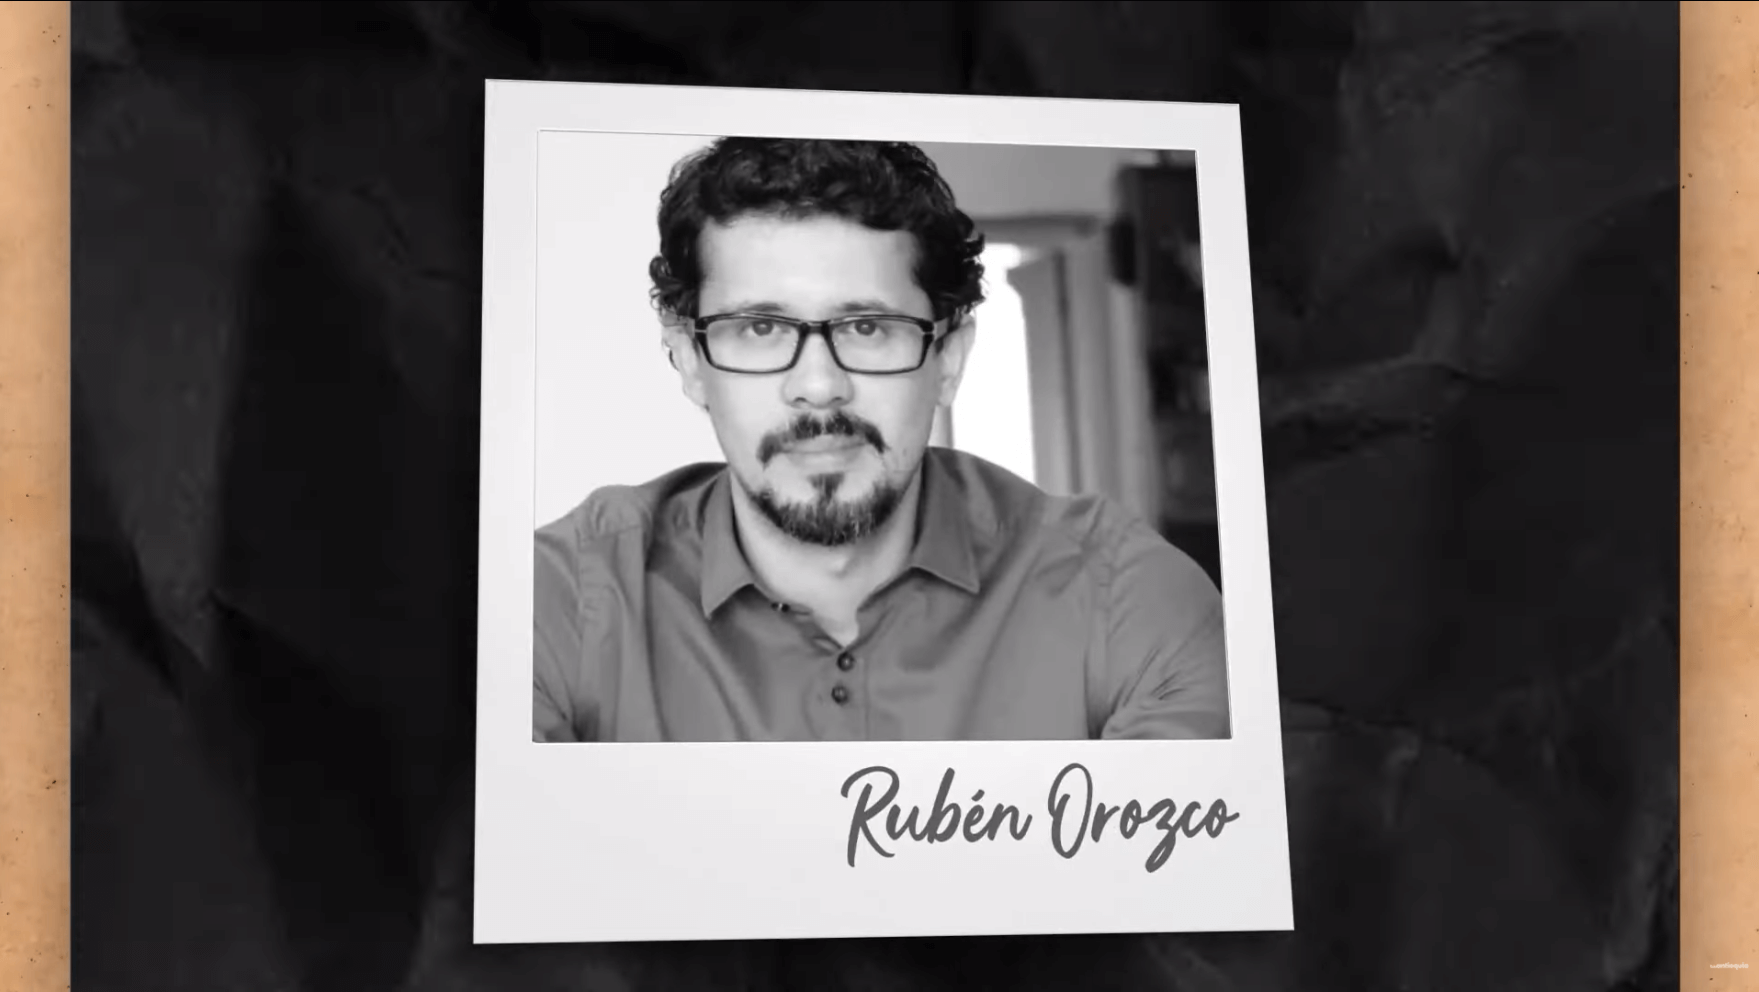 Rubén Orozco Image